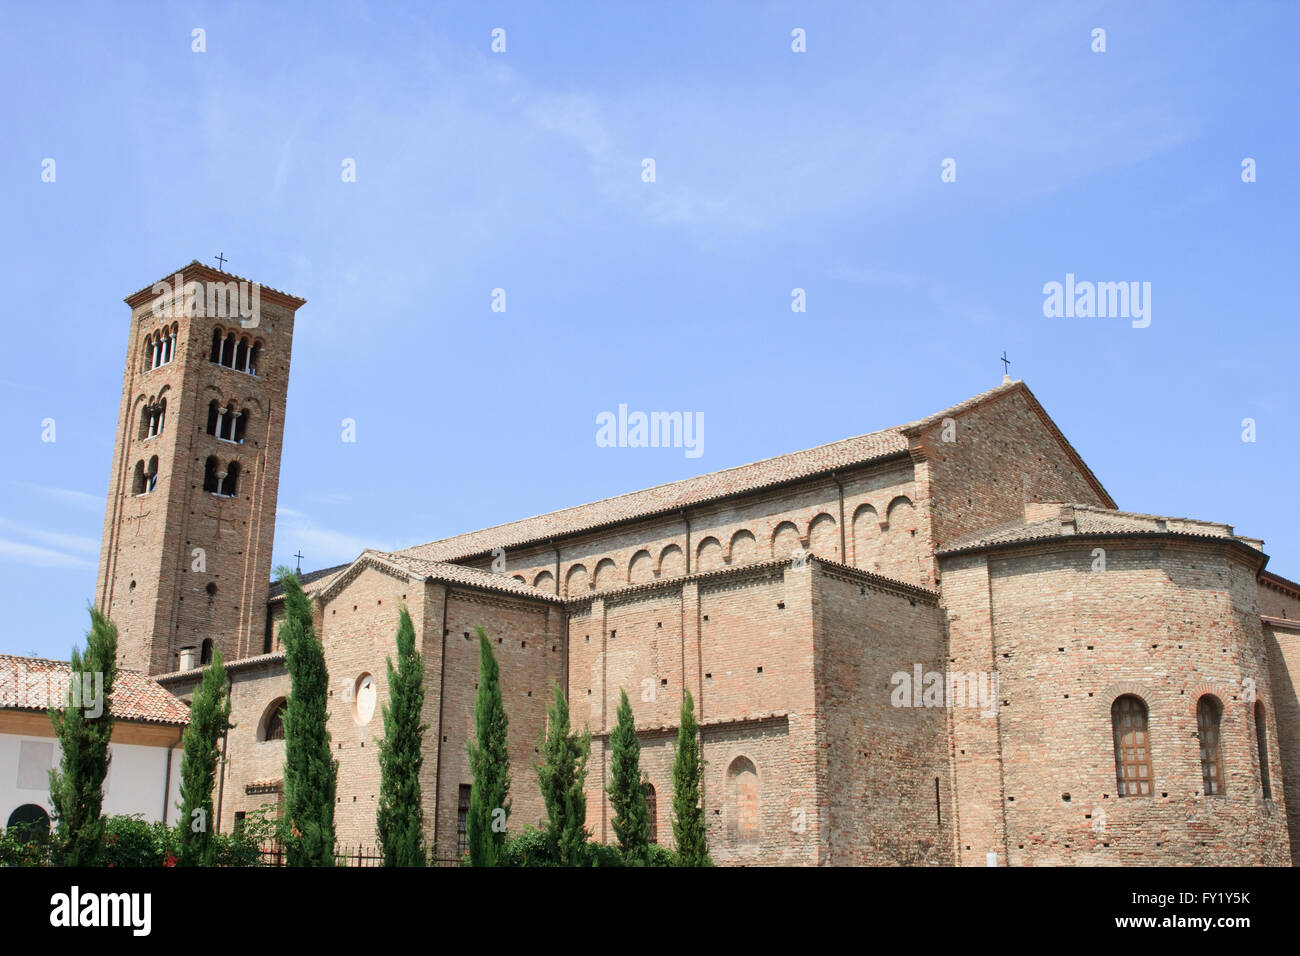 Basilica di San Francesco in Ravenna, Italy. Stock Photo